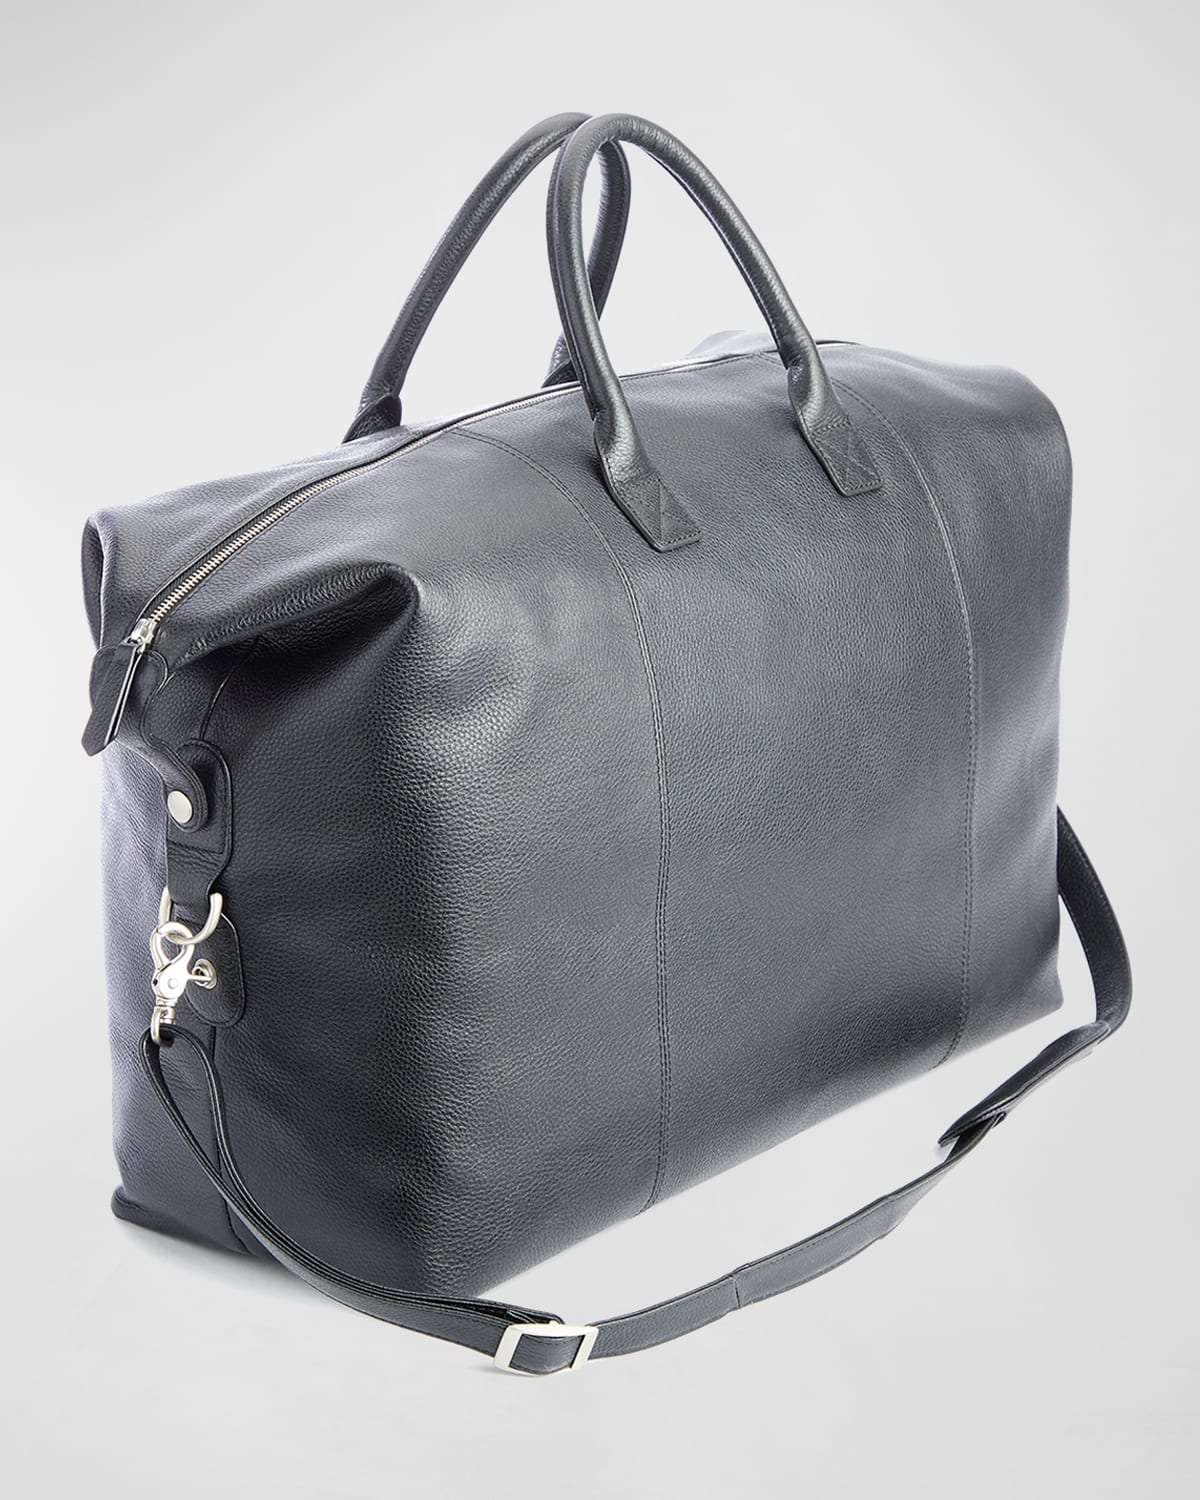 Royce New York Executive Weekender Duffel Bag In Black